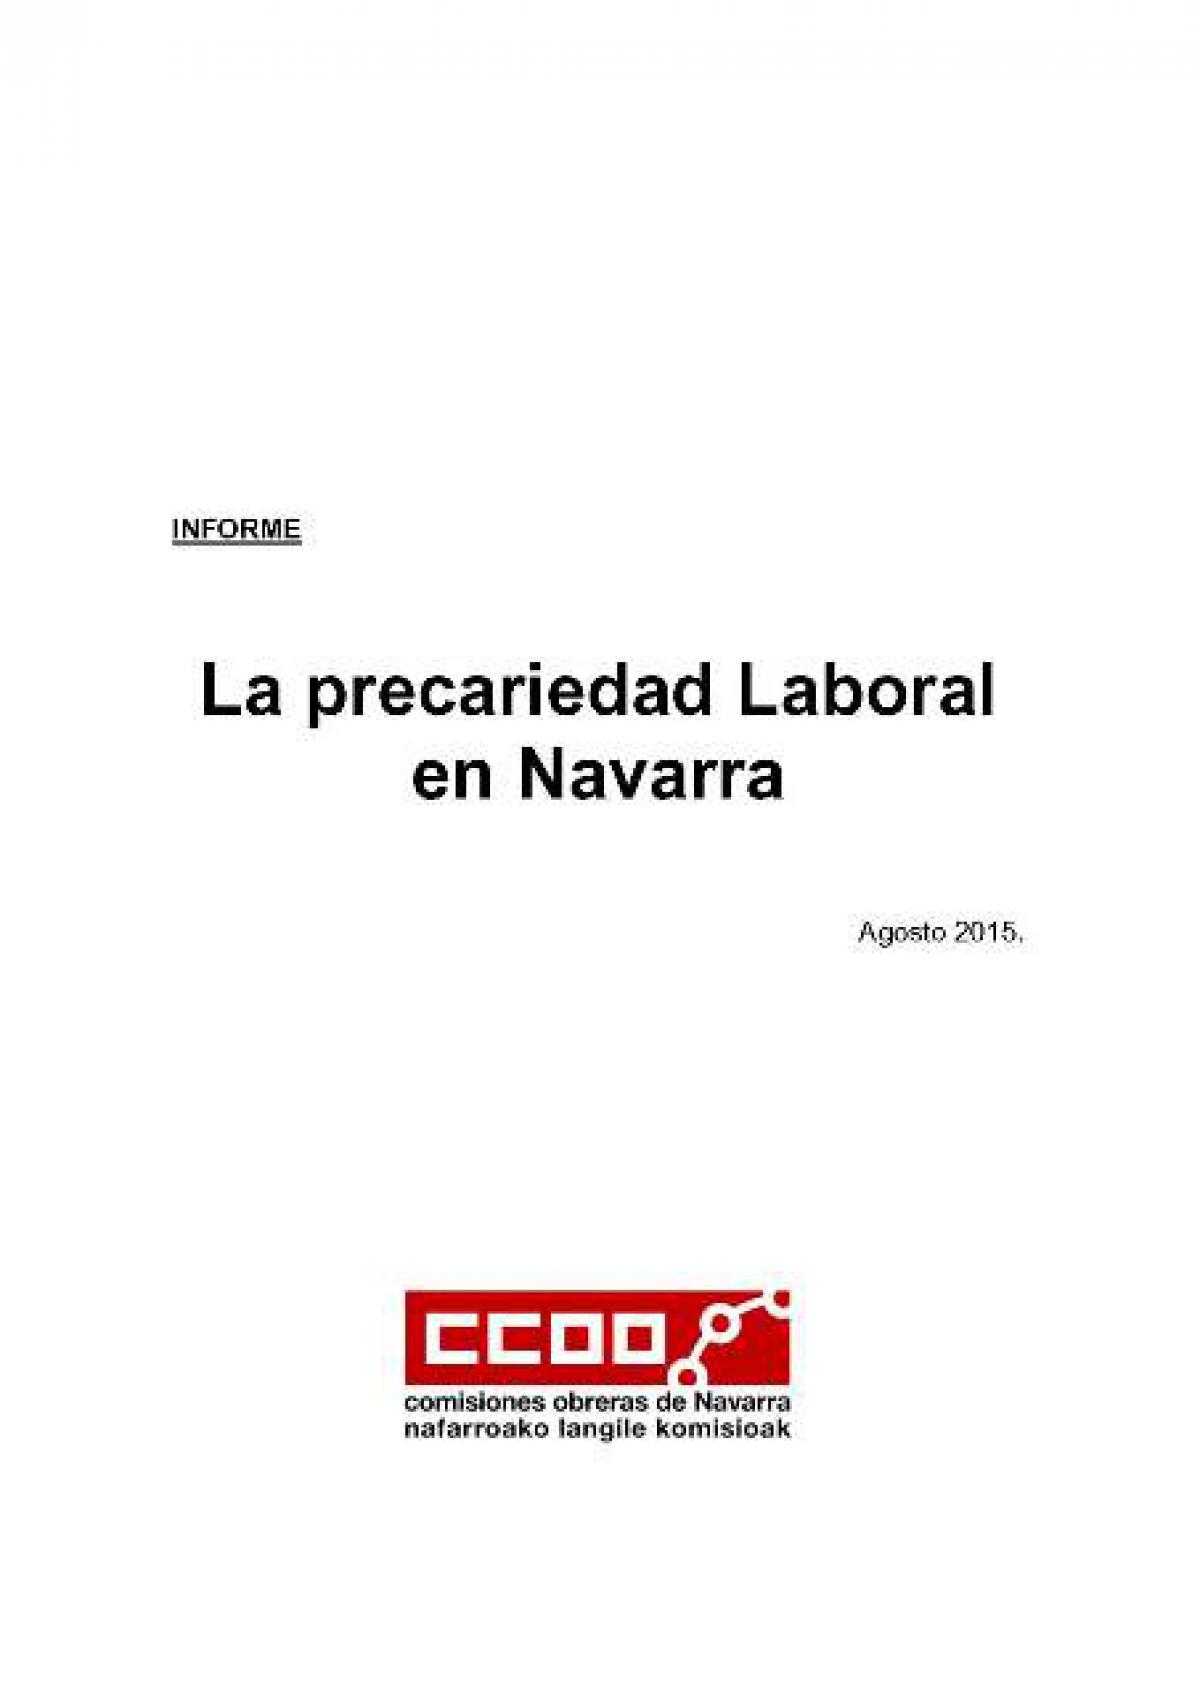 Informe Precariedad Laboral en Navarra